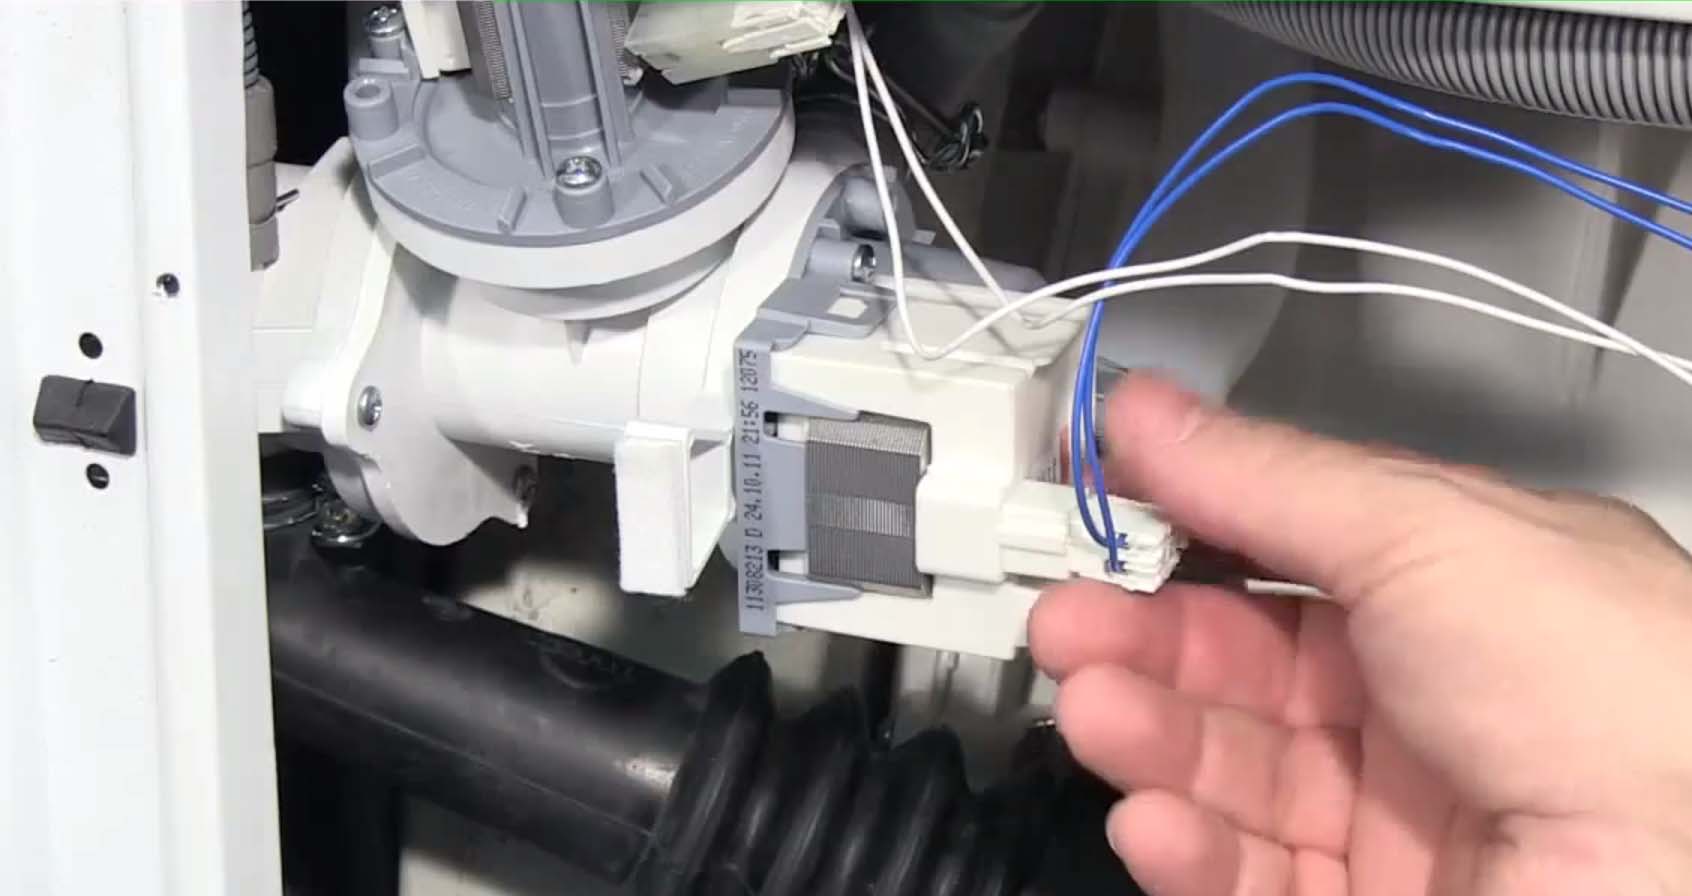 Kiểm tra hệ thống dây mạch để sửa máy giặt Ariston hiện mã lỗi F04 hoặc F07